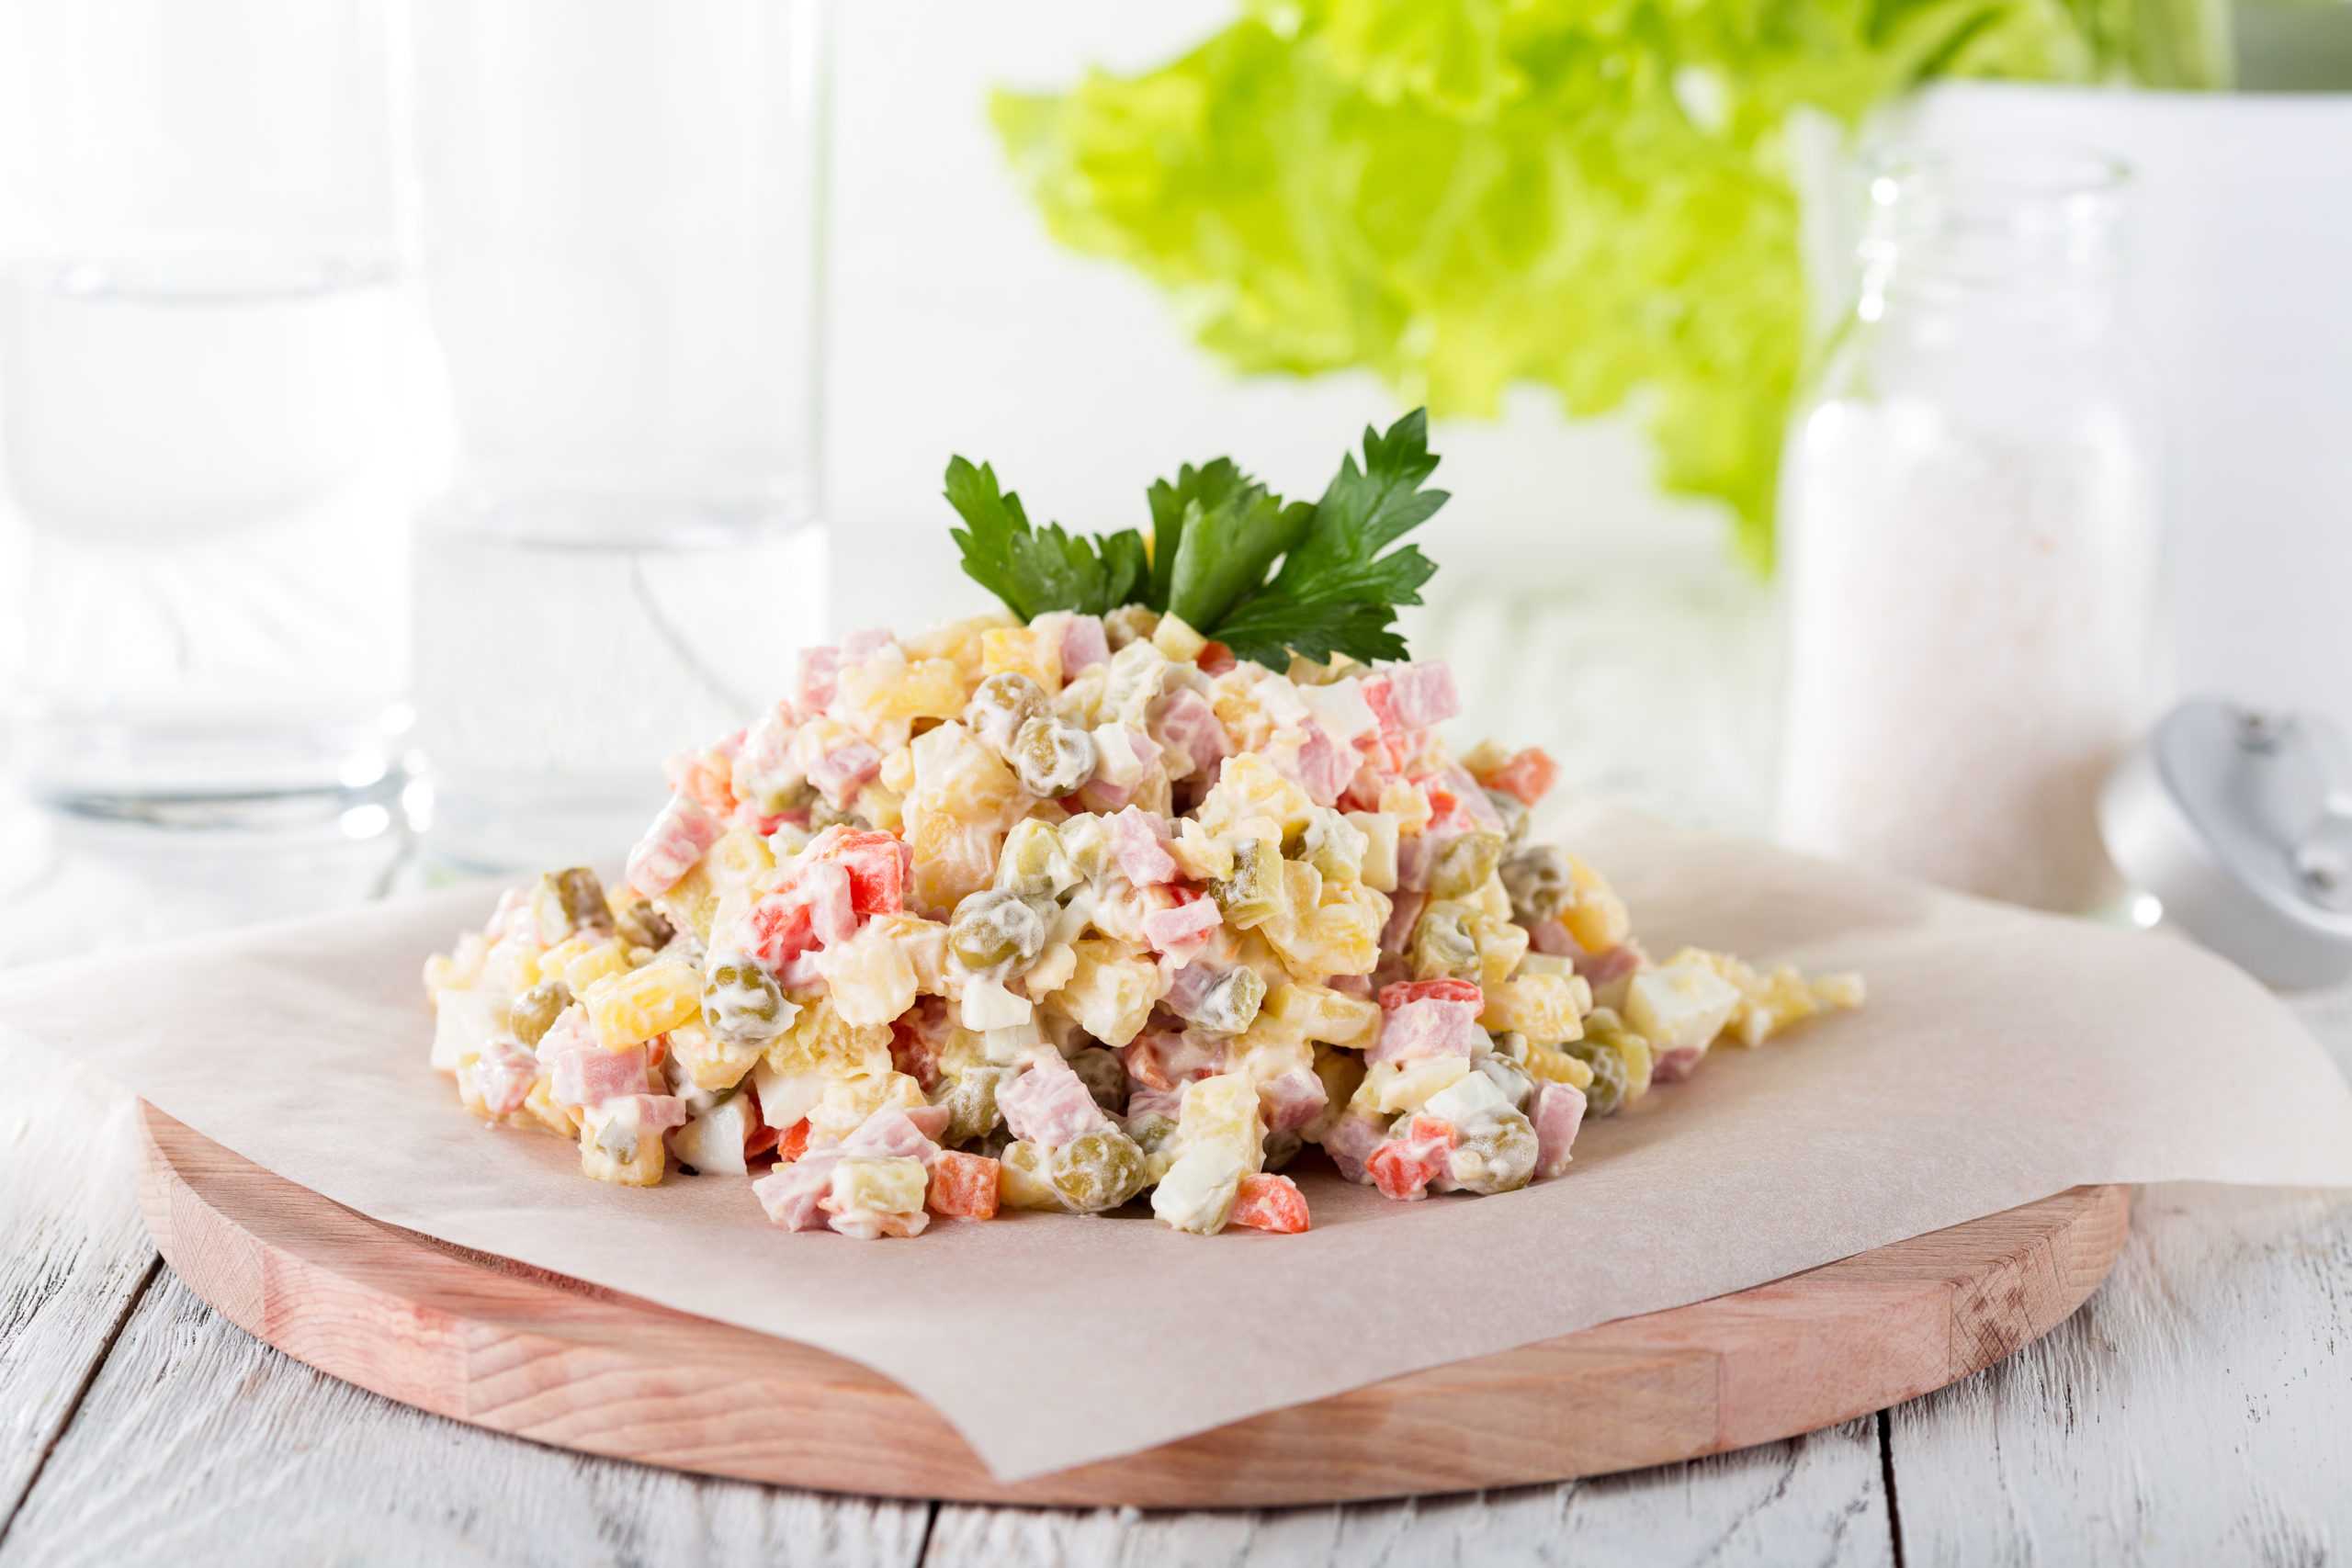 Картофельный салат: рецепты вкусного блюда с солёными огурцами и отварными овощами